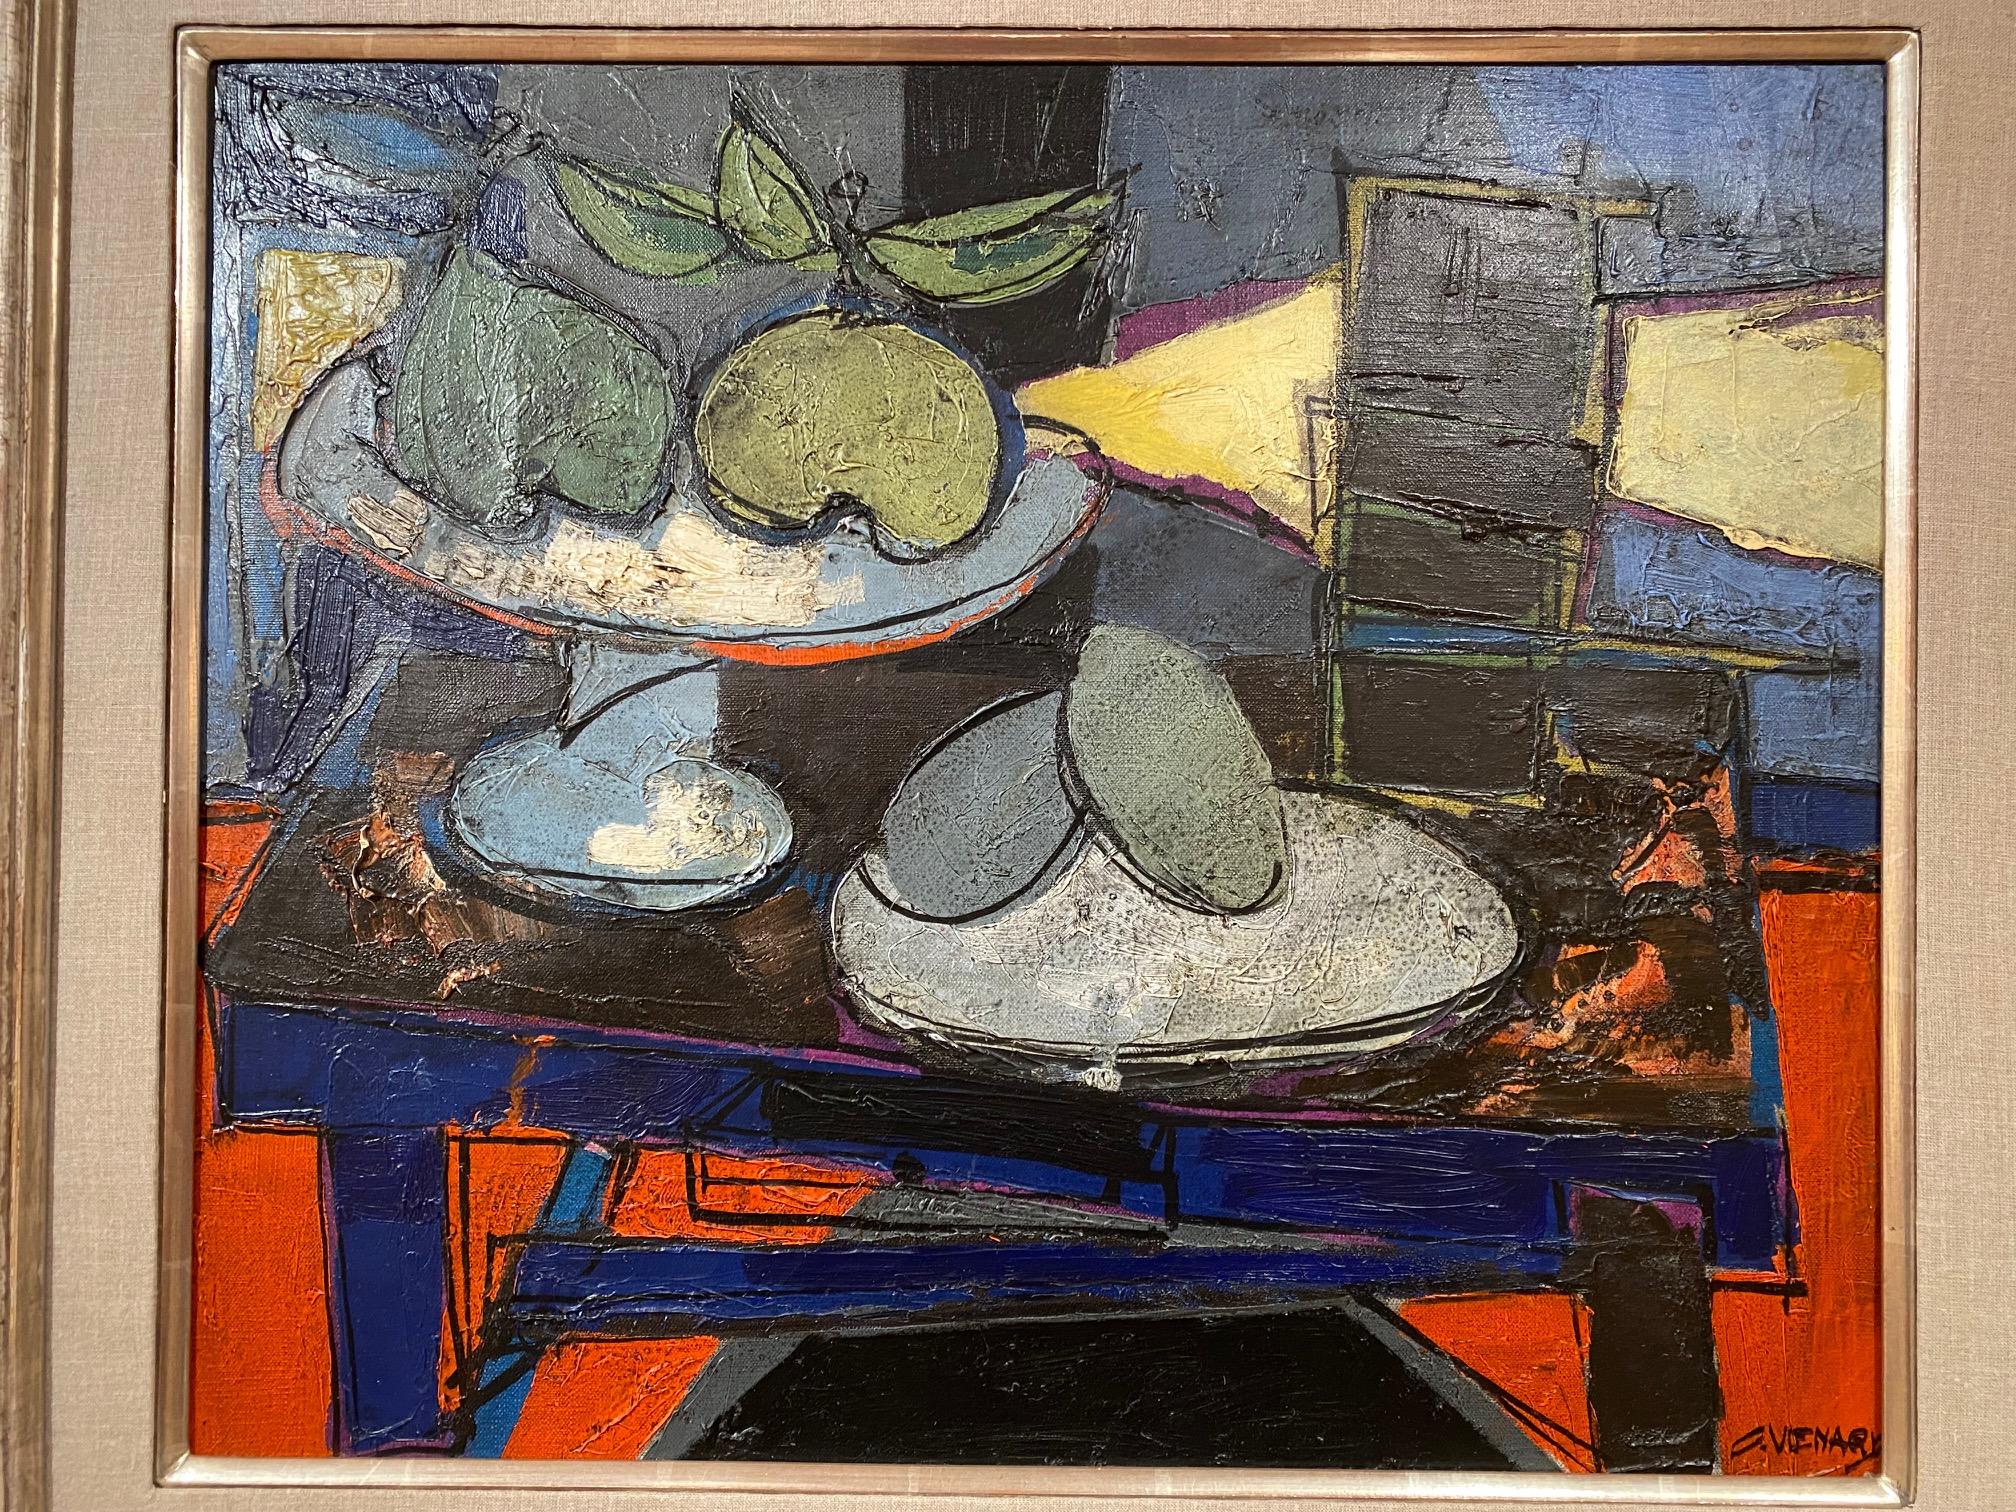 Claude Venard, französischer Maler (1913-1999), farbenfrohes abstraktes kubistisches Öl auf Leinwand 